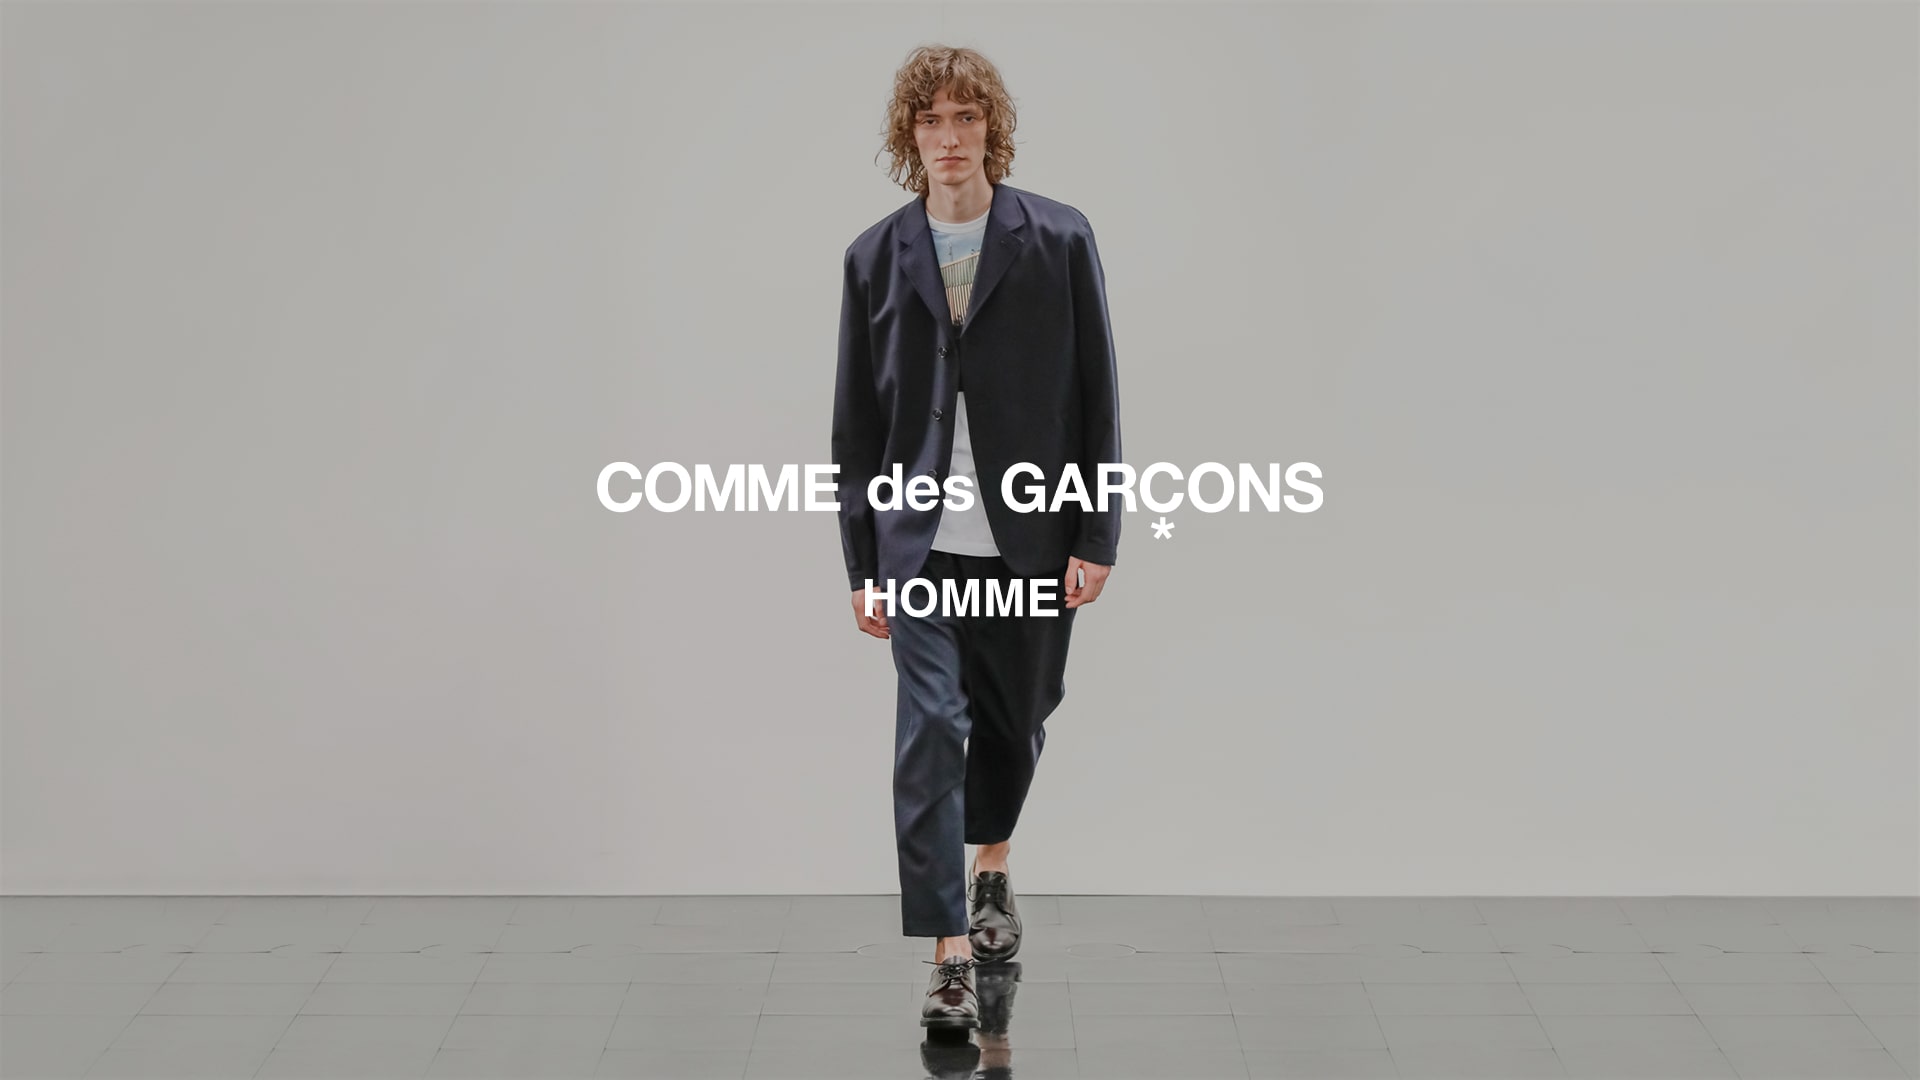 COMME-DES-GARCONS-HOMME COMME des GARÇONS HOMME